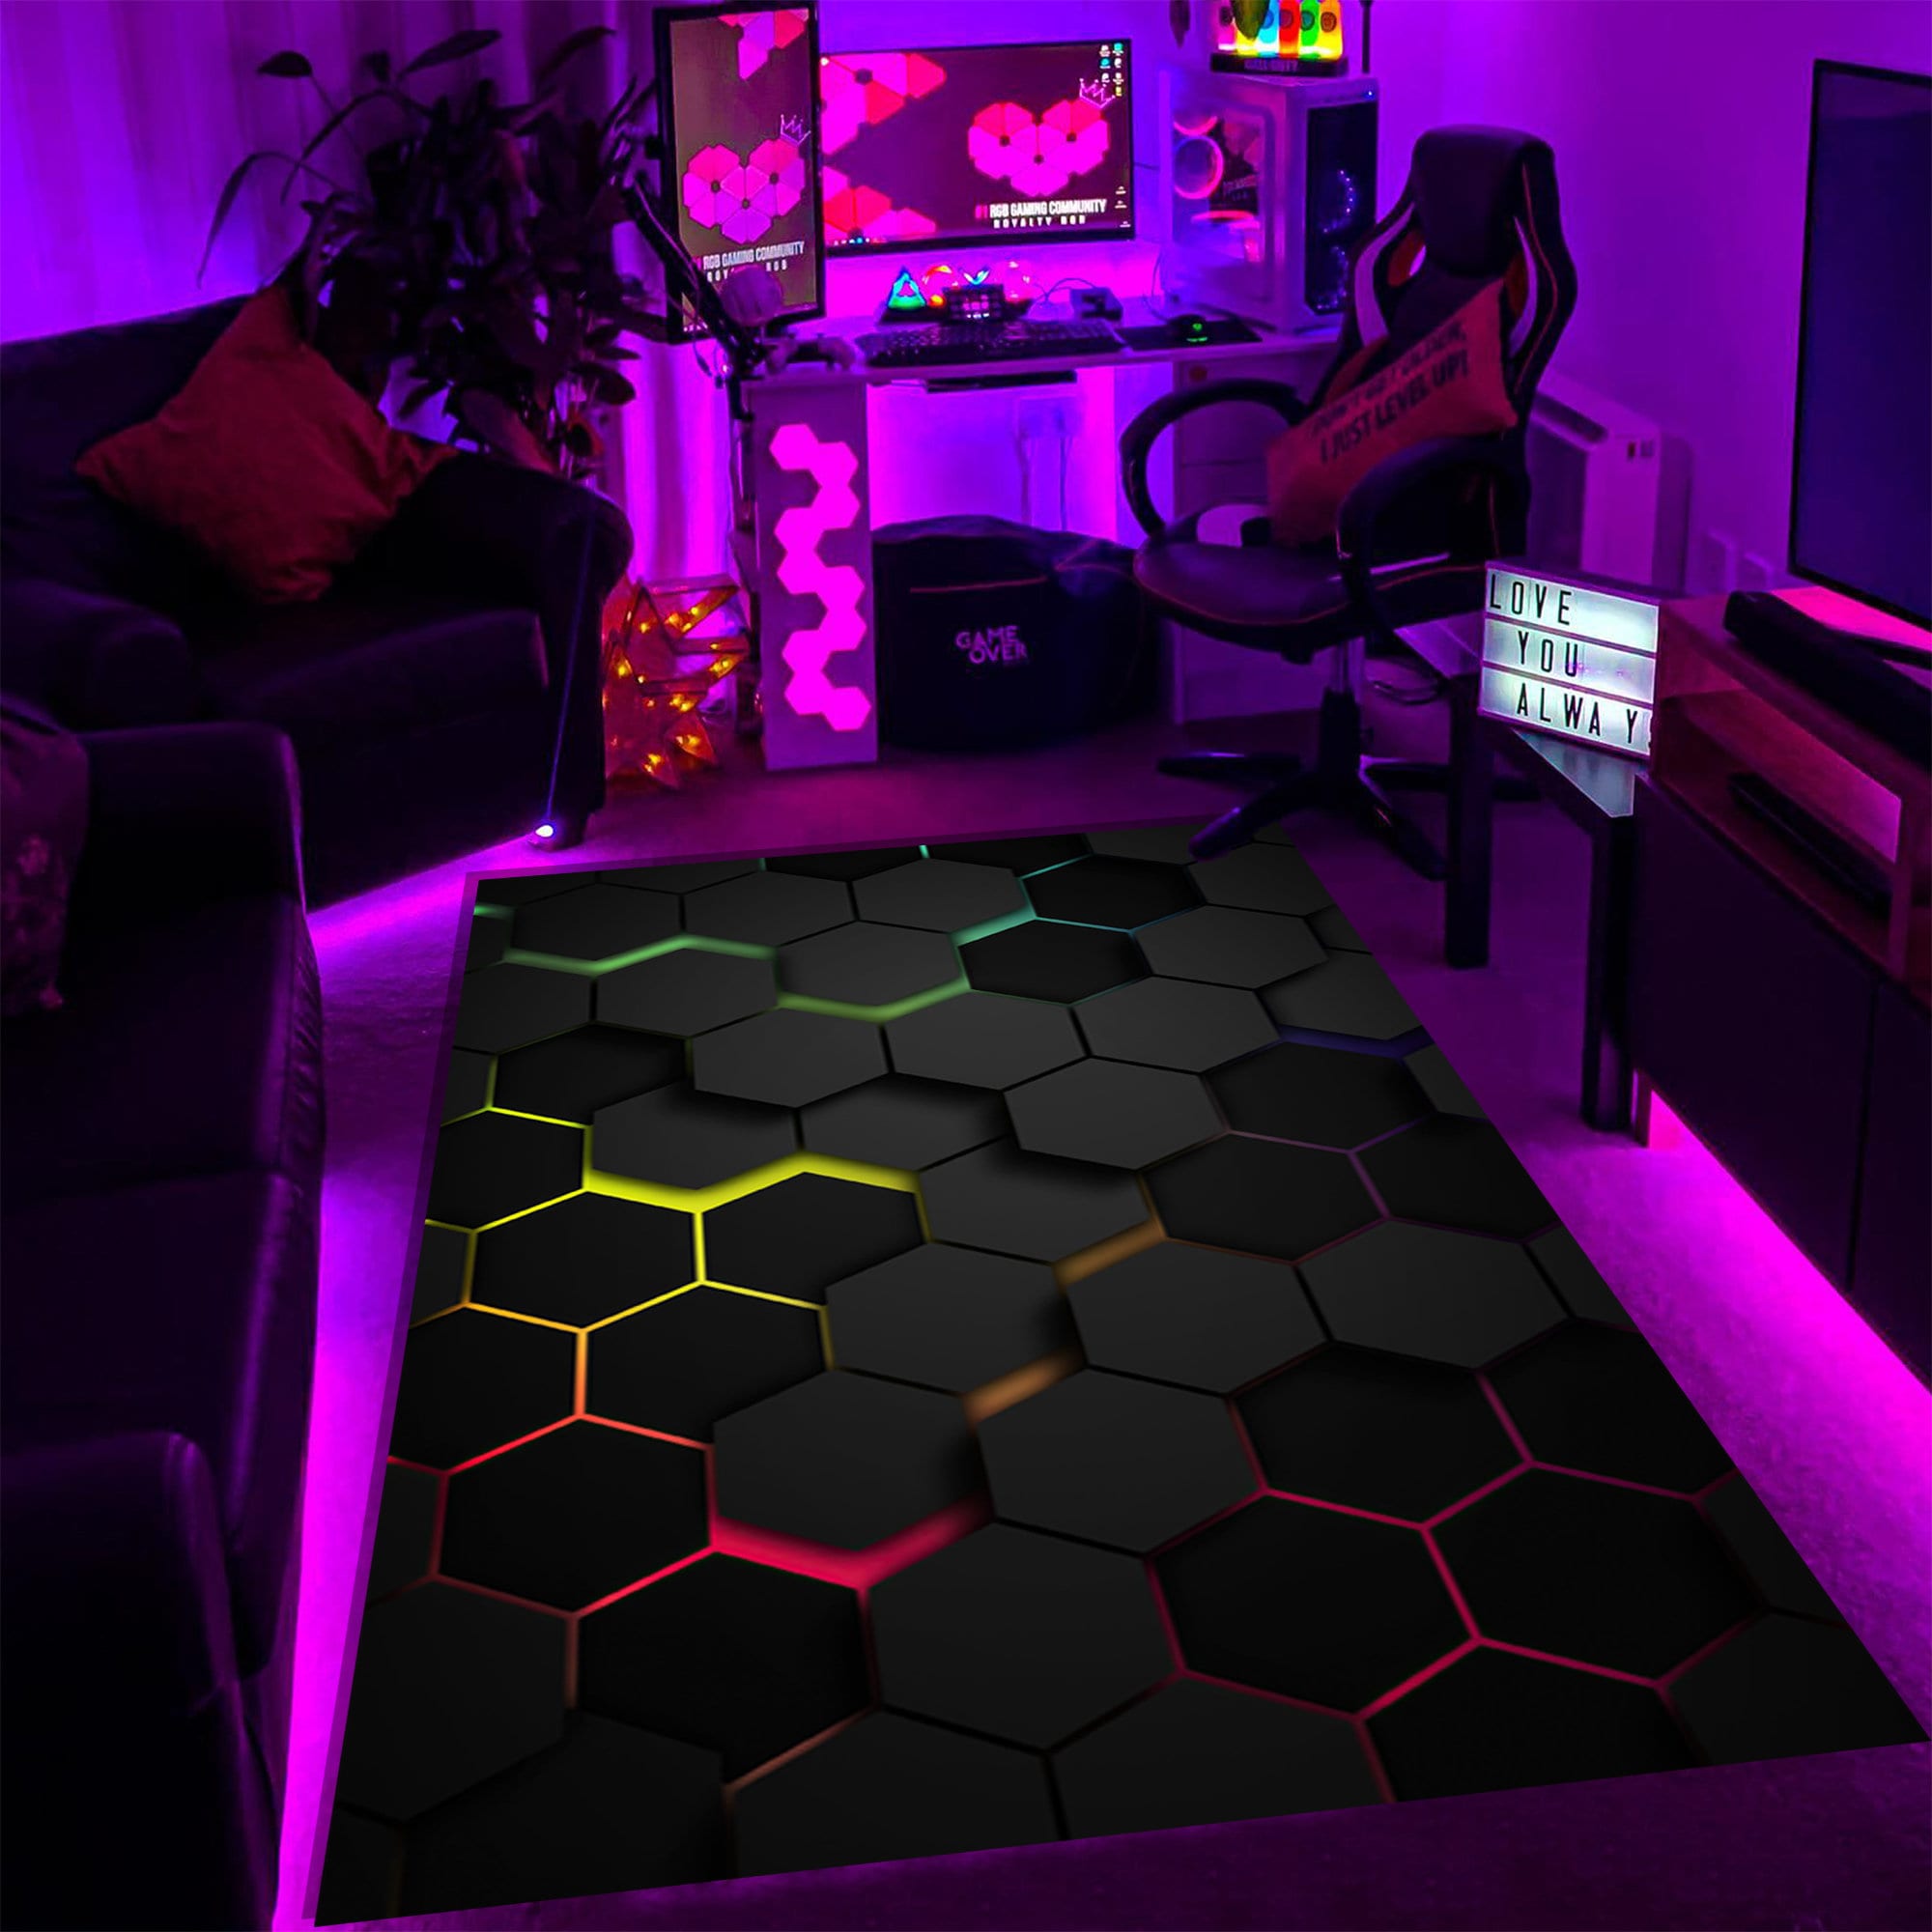 Gamer Gaming Xbox tapis créatifs tapis pour salon chambre décoratif enfant  jeu tapis de sol antidérapant enfant zone de jeu tapis cadeau